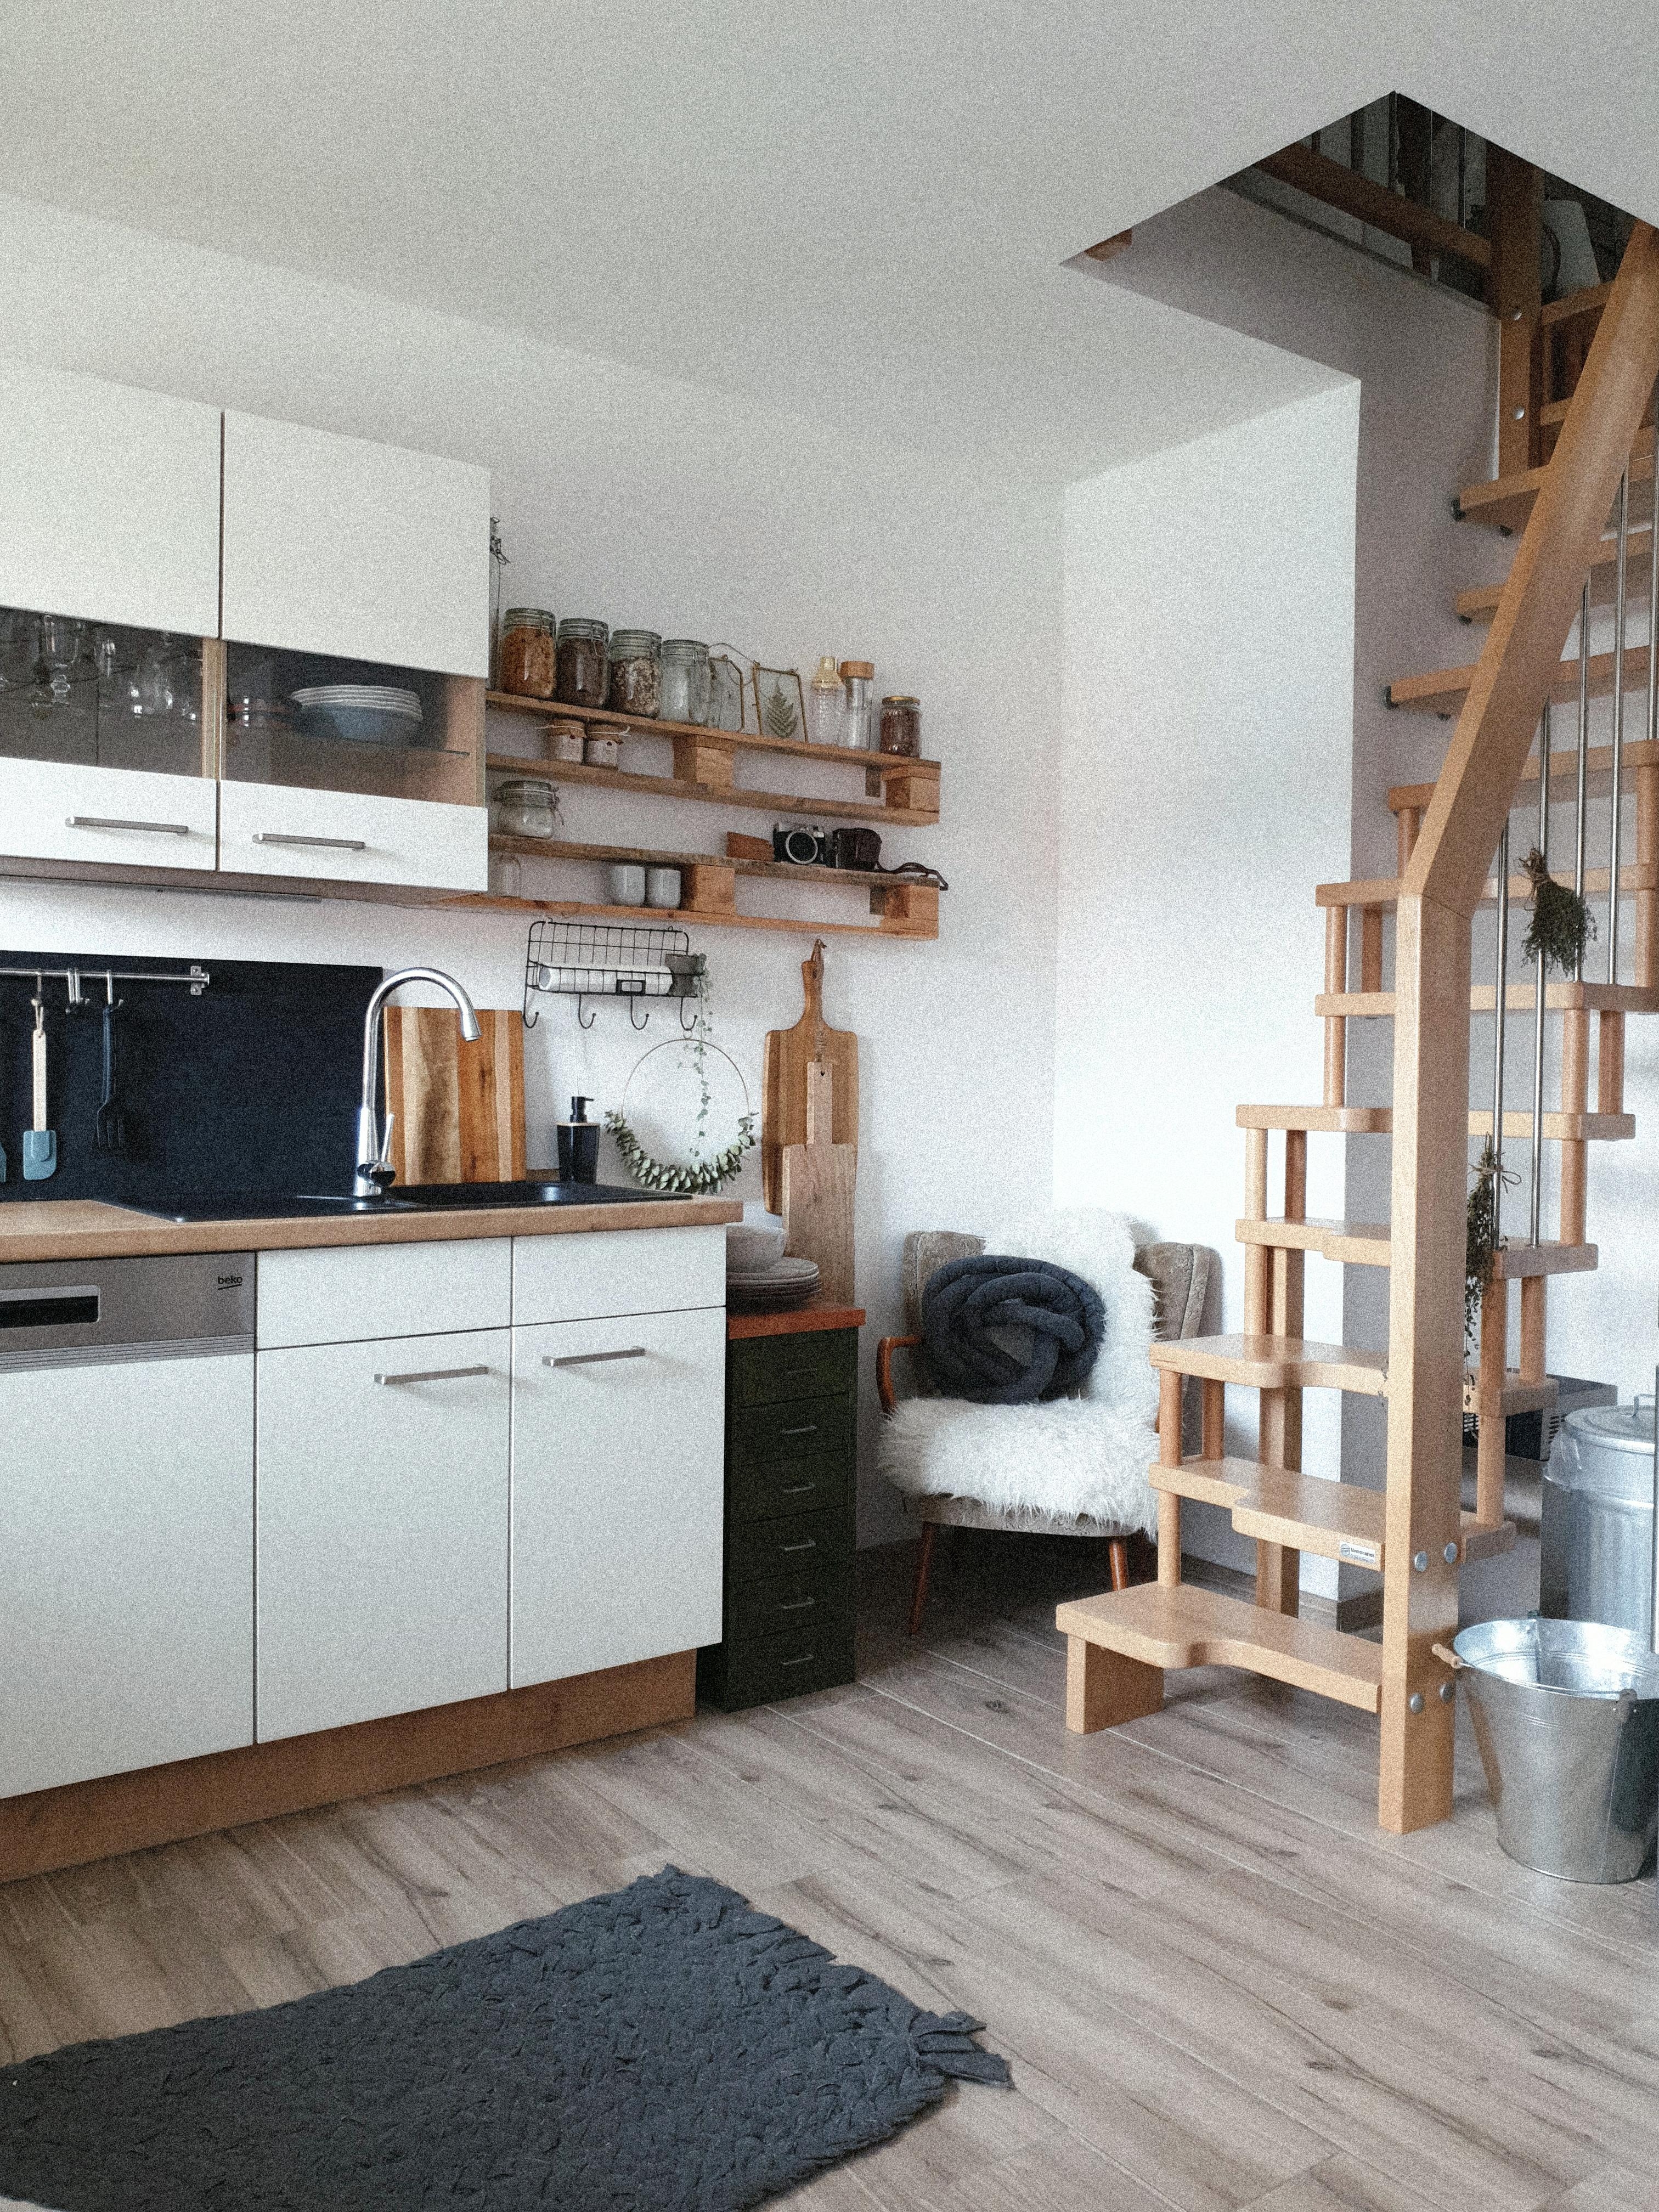 Unsere Wohnküche. Ein Mix aus Holz und weiß - eine Mischung aus alt und neu.
#couchliebt#skandistyle